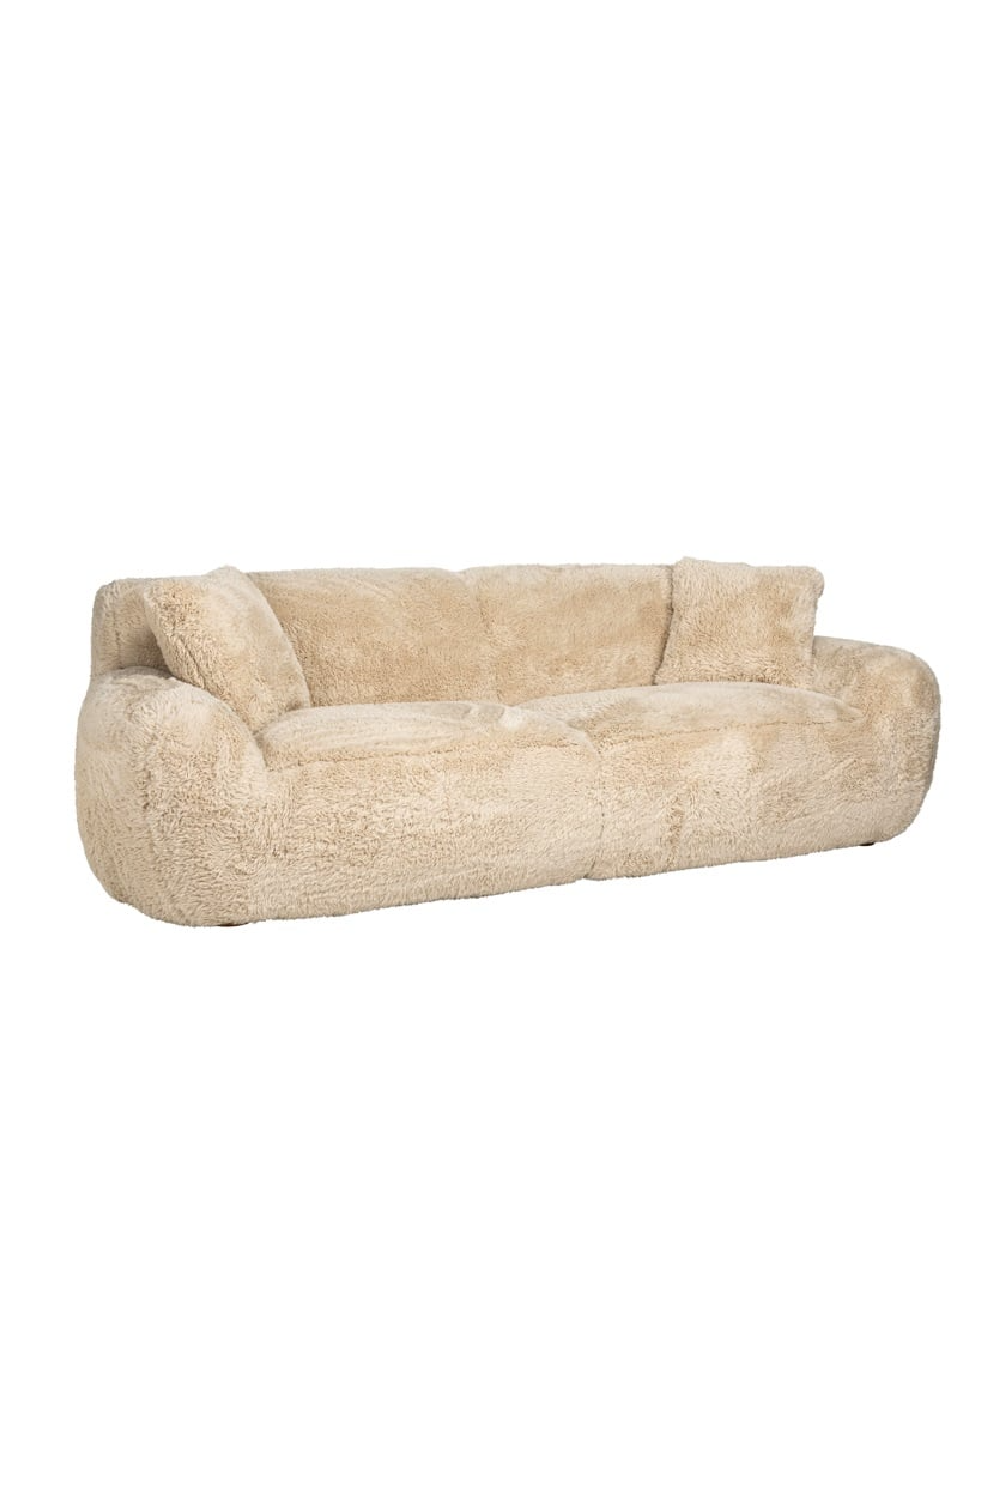 Beige Modern Sofa | OROA Comfy | Oroa.com